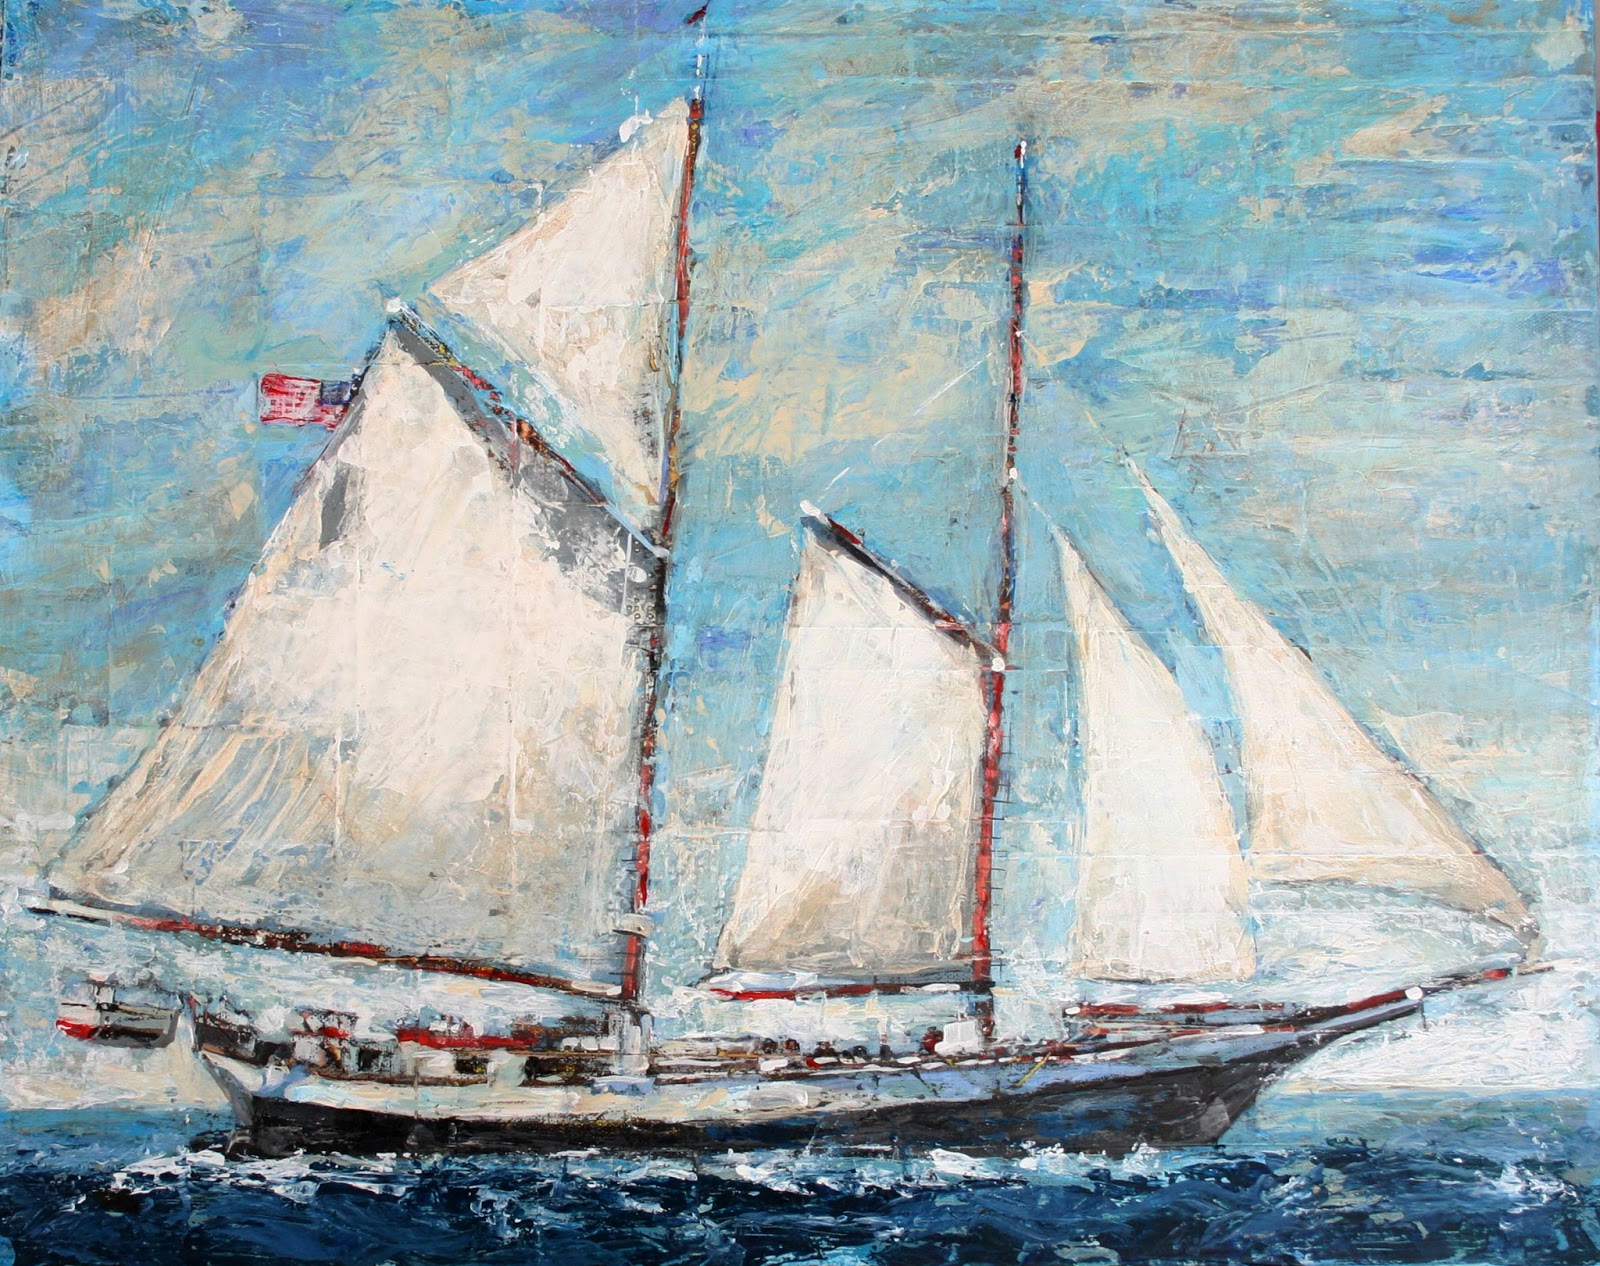 Sailboat Painting, 16" x 20", mixed media